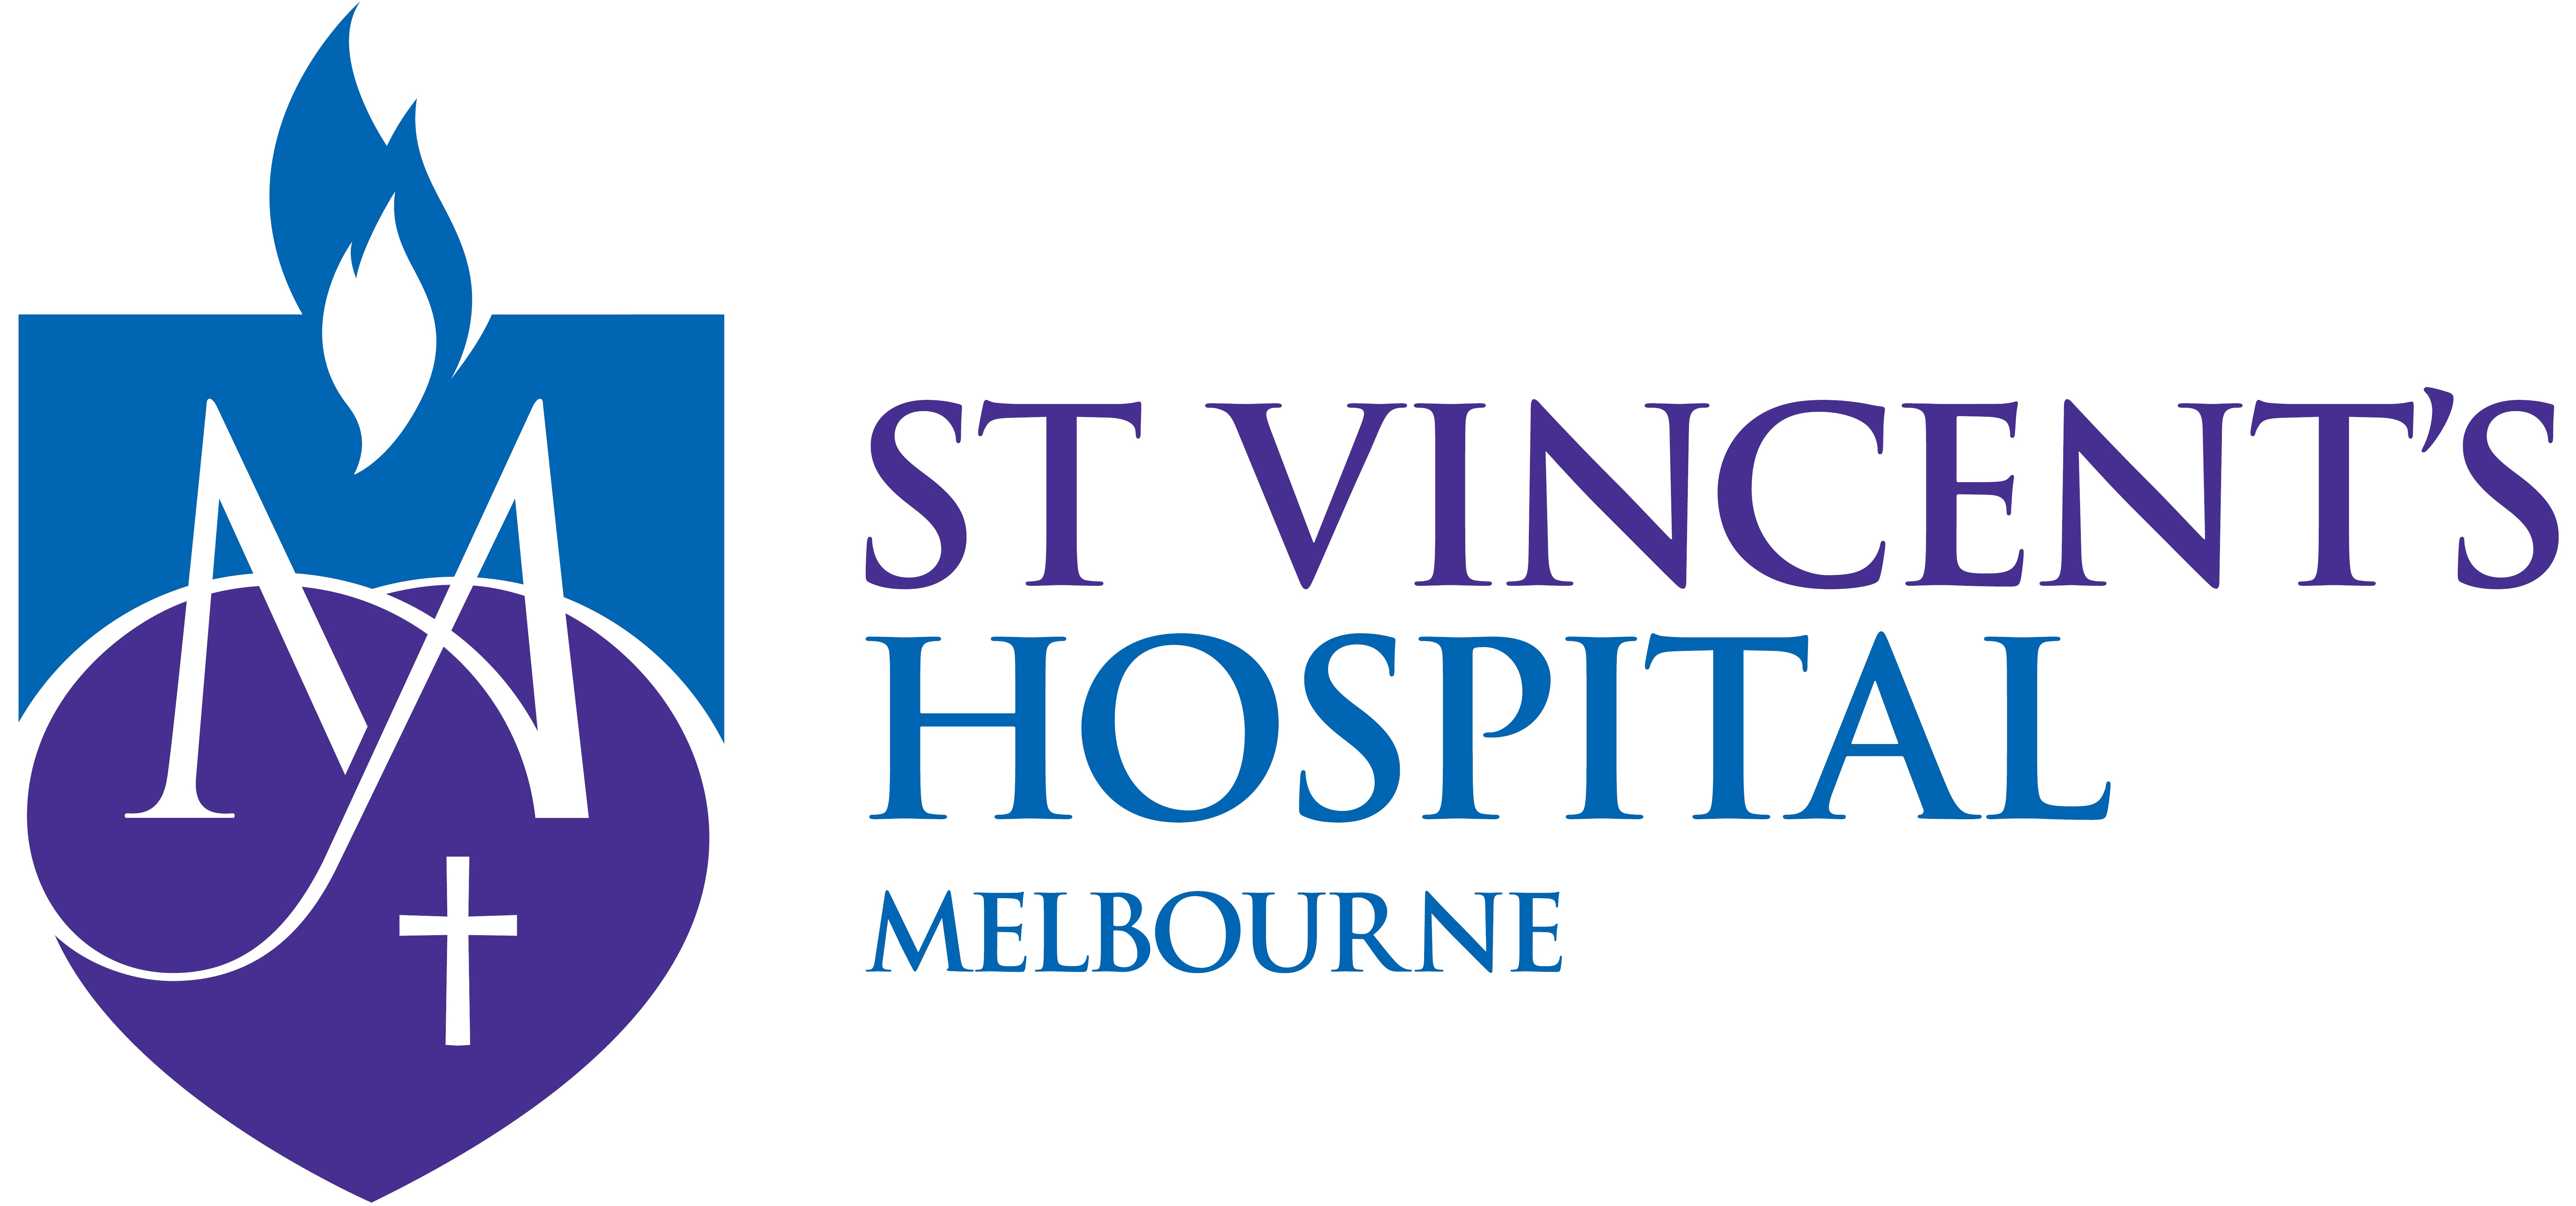 St Vincent's Hospital Foundation logo